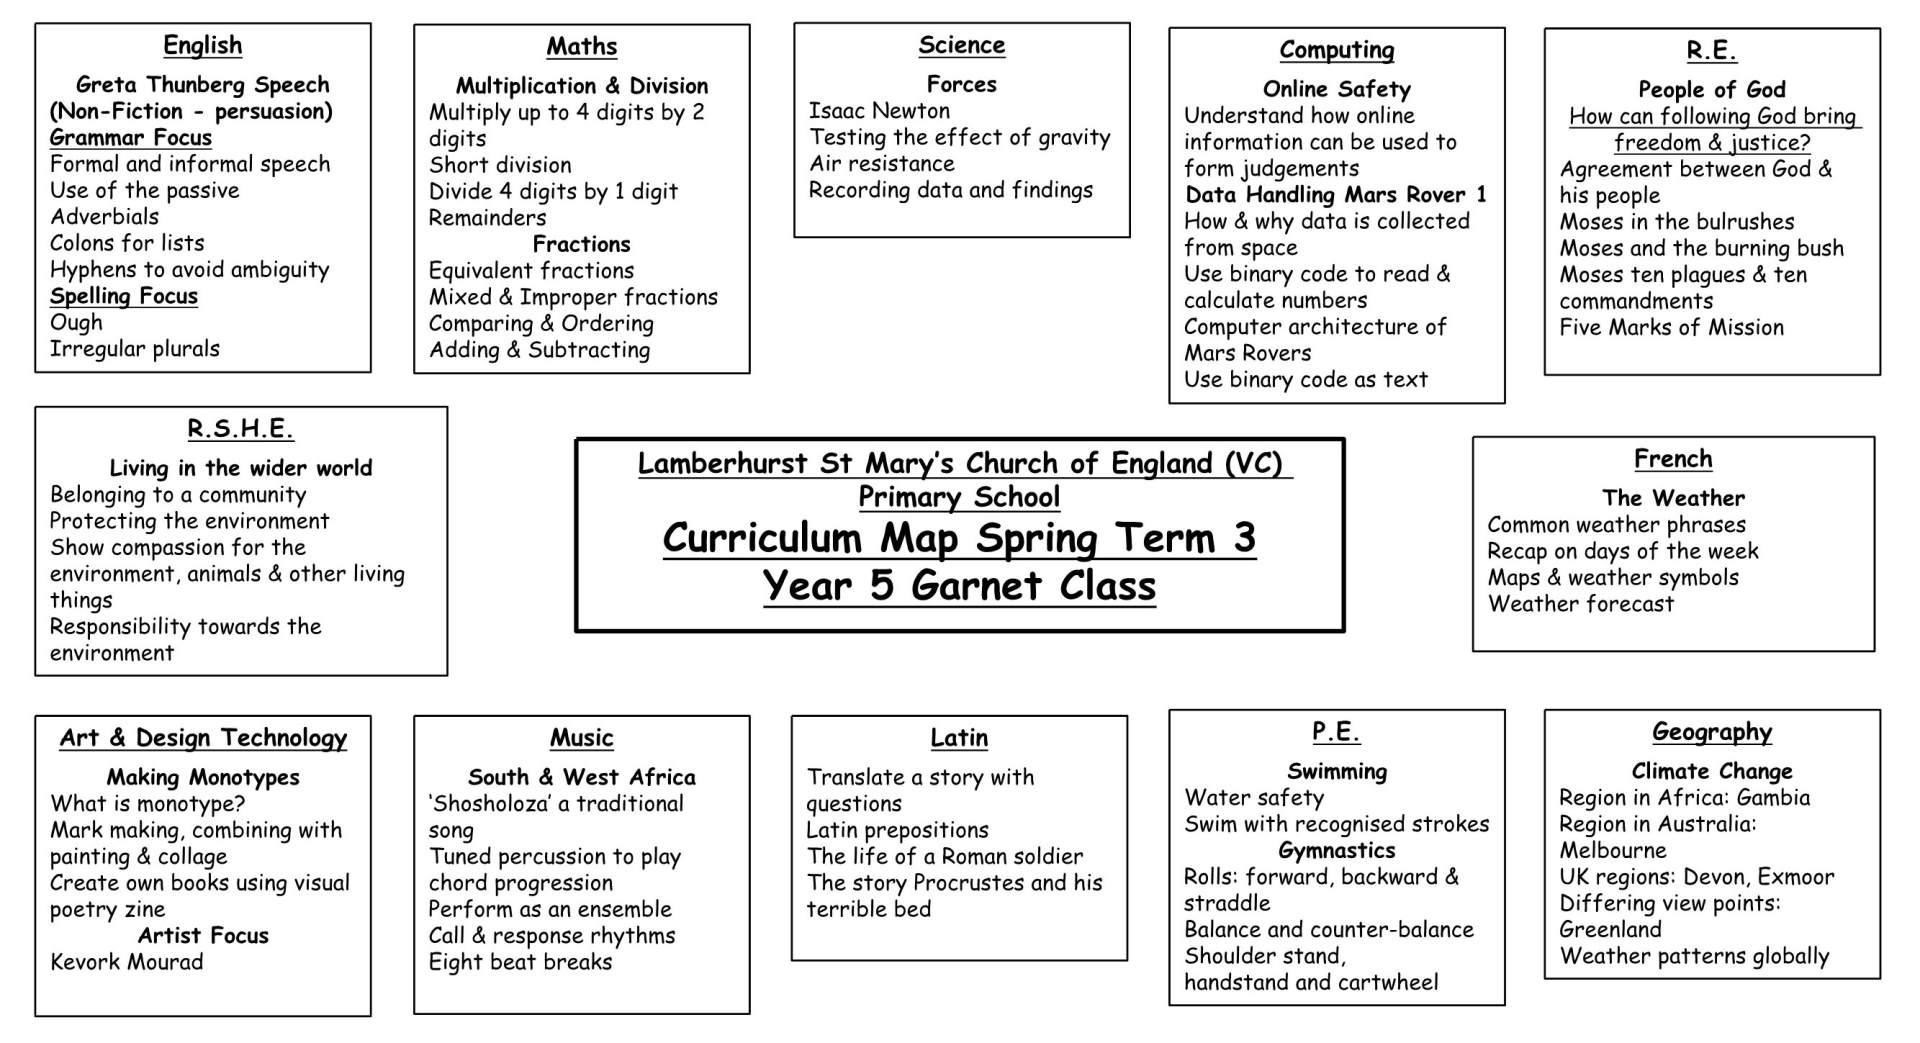 Y5 Curriculum Map Term 3